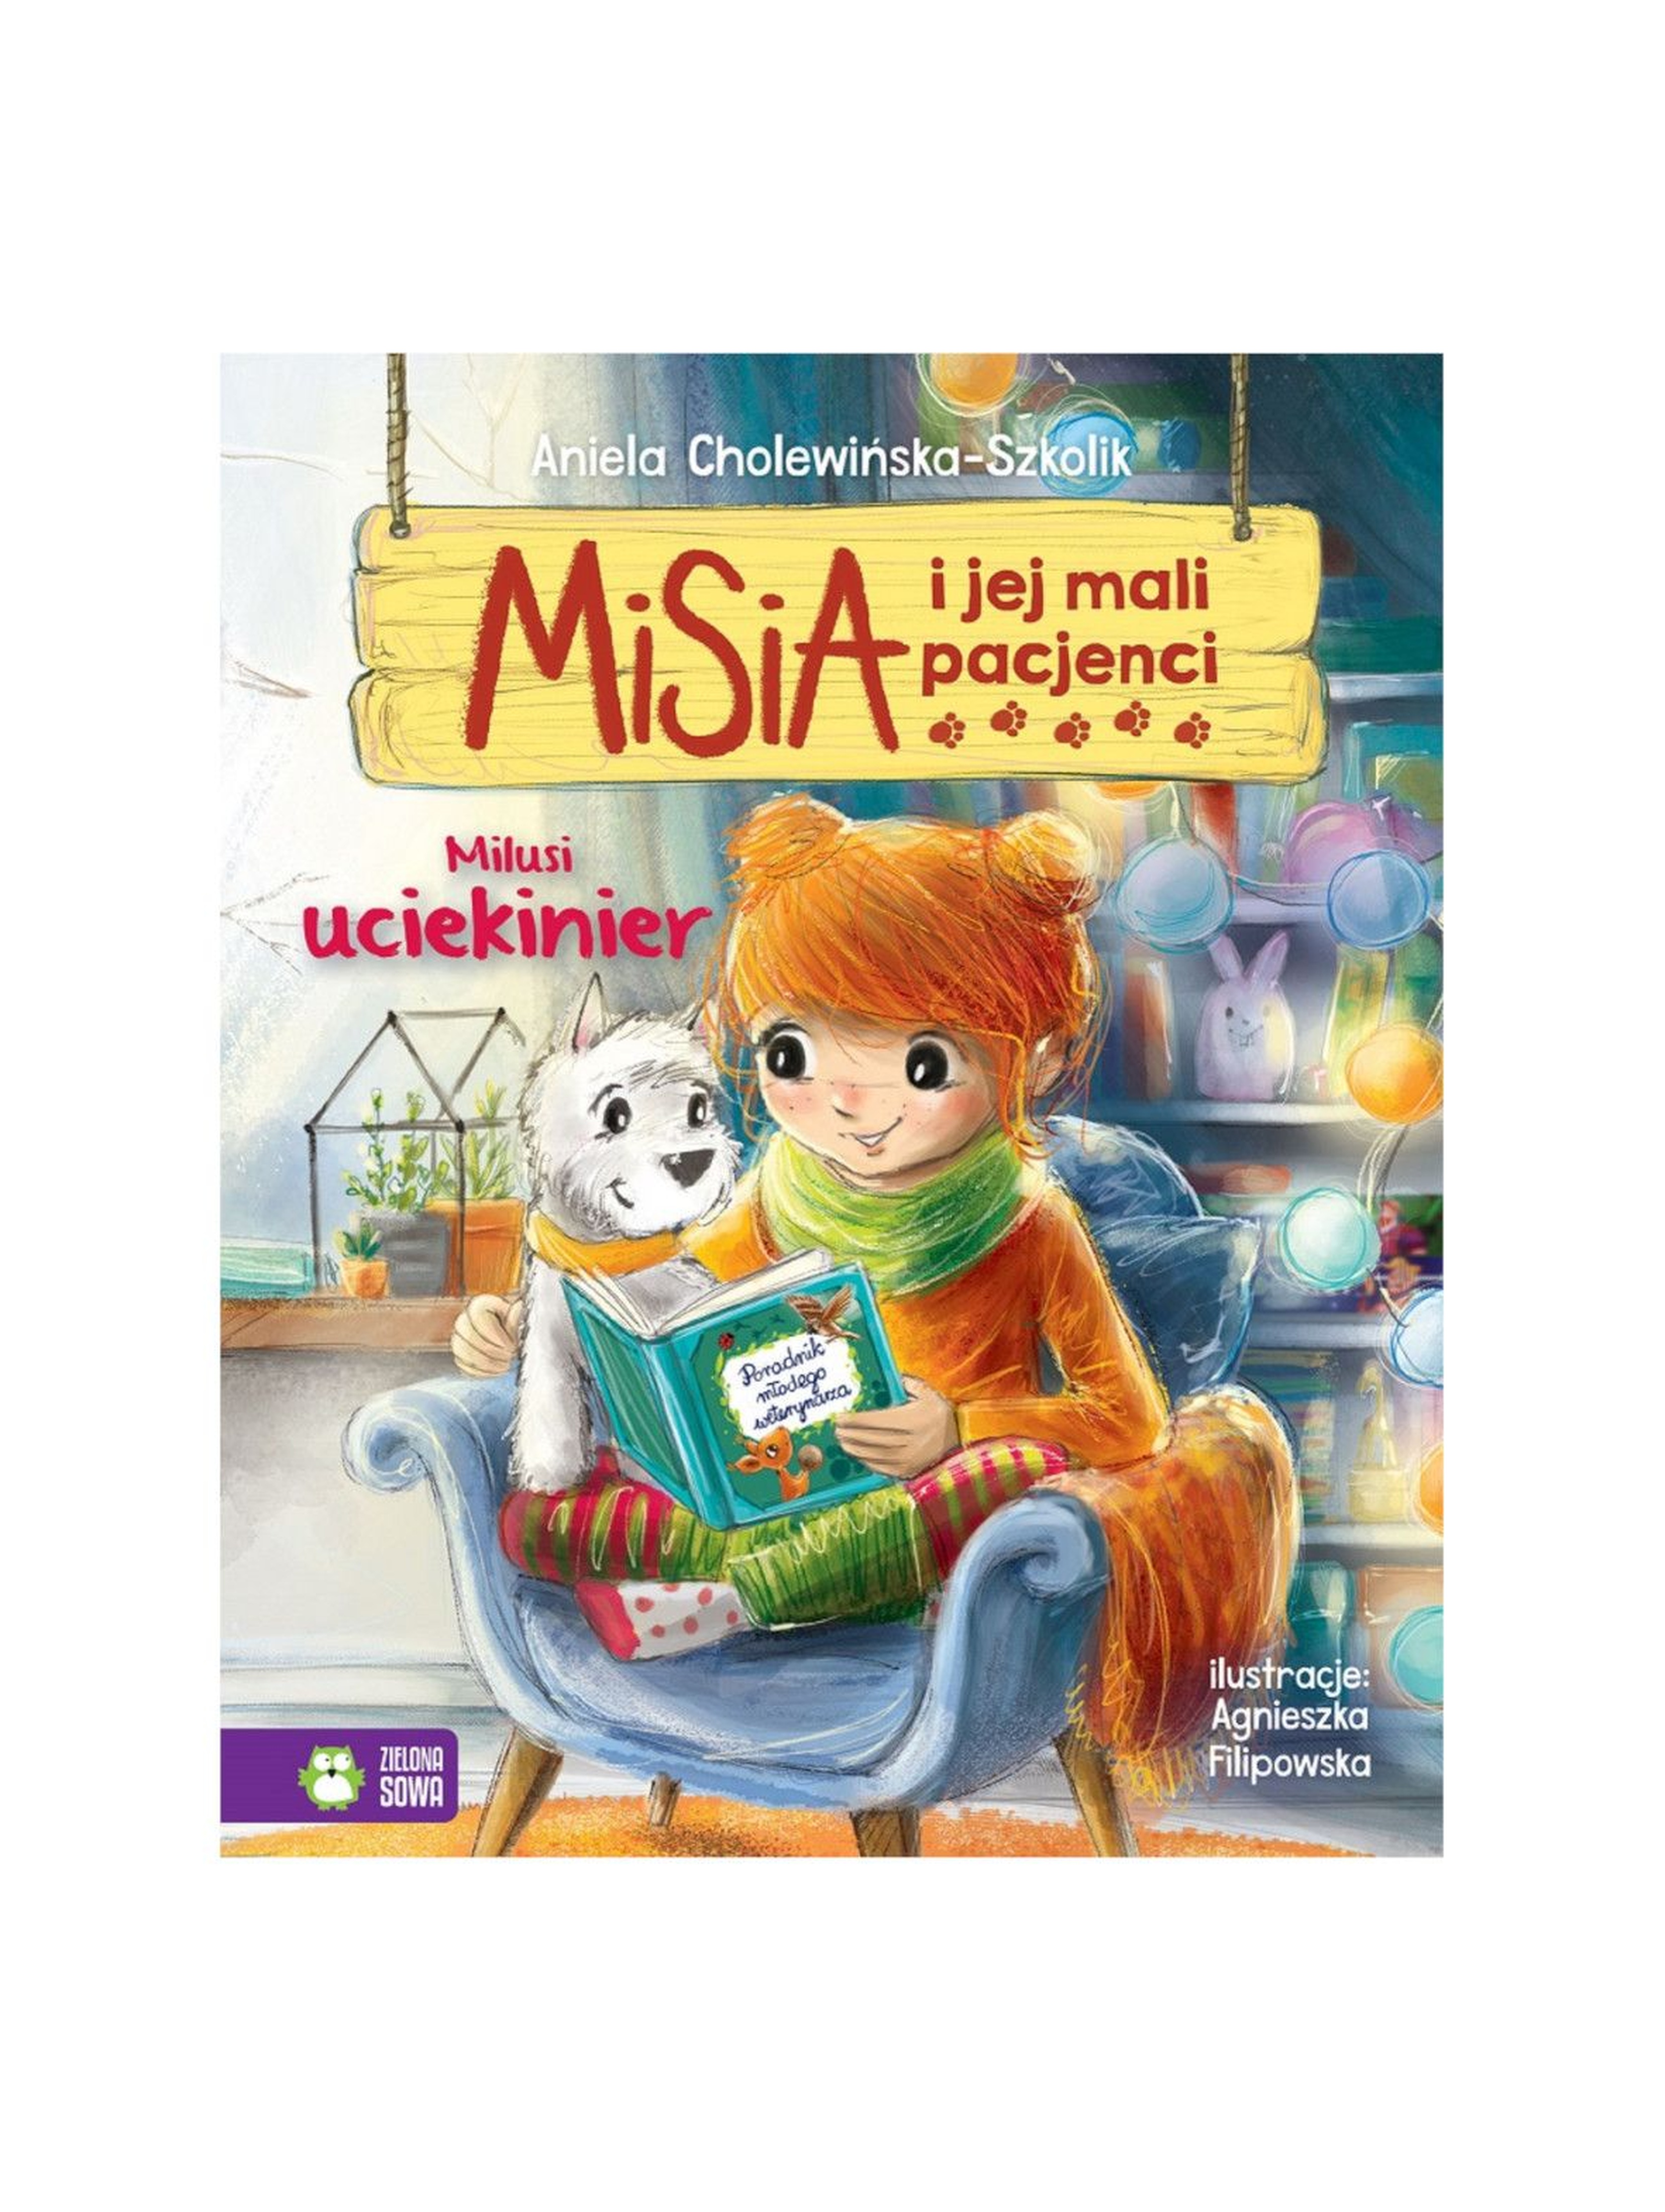 Książka dla dzieci- Milusi uciekinier. Misia i jej mali pacjenci wiek 4+